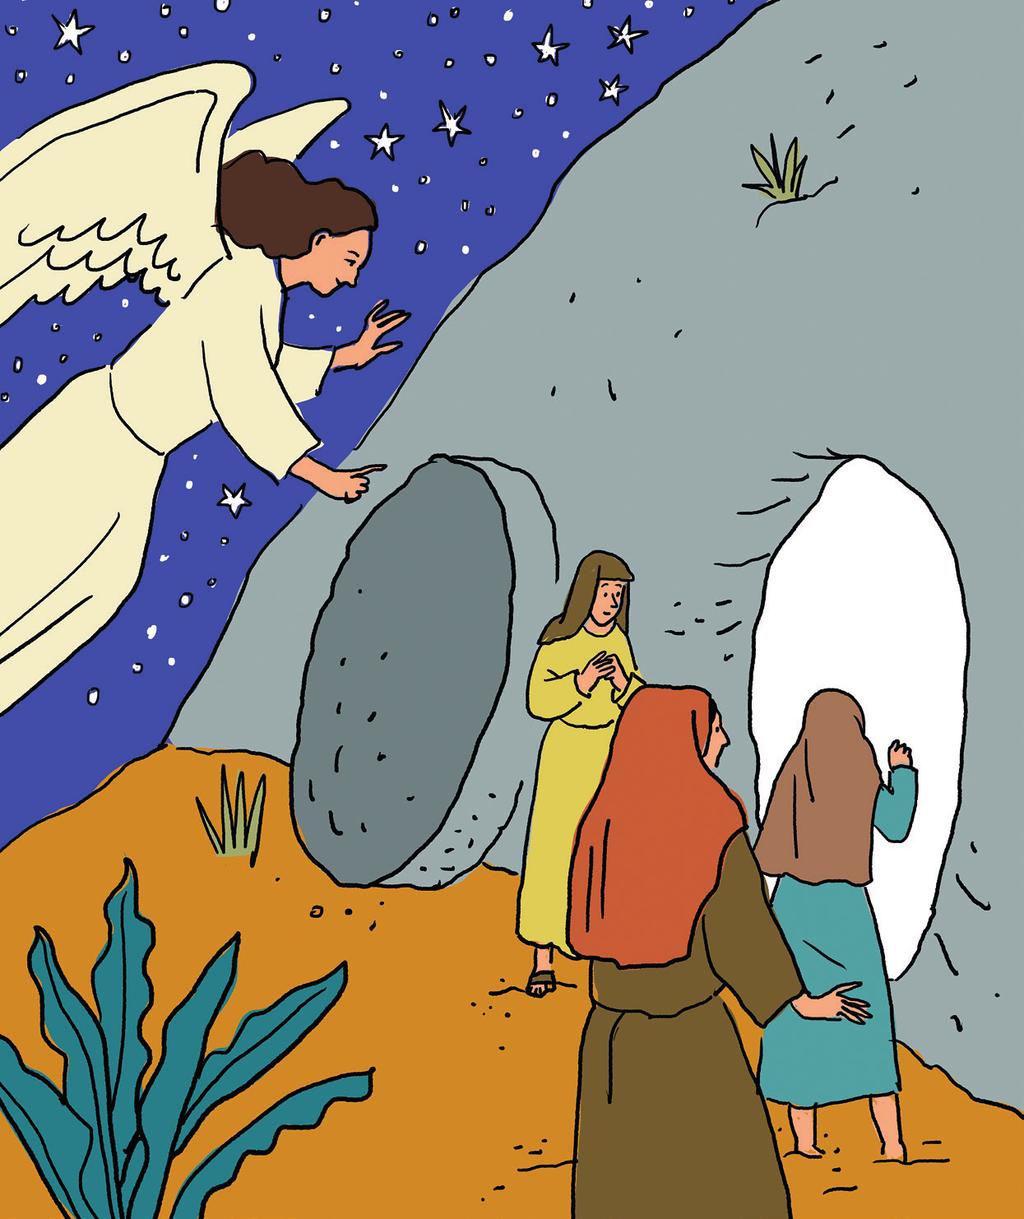 Enkeli kehotti naisia kertomaan Jeesuksen ylösnousemuksesta